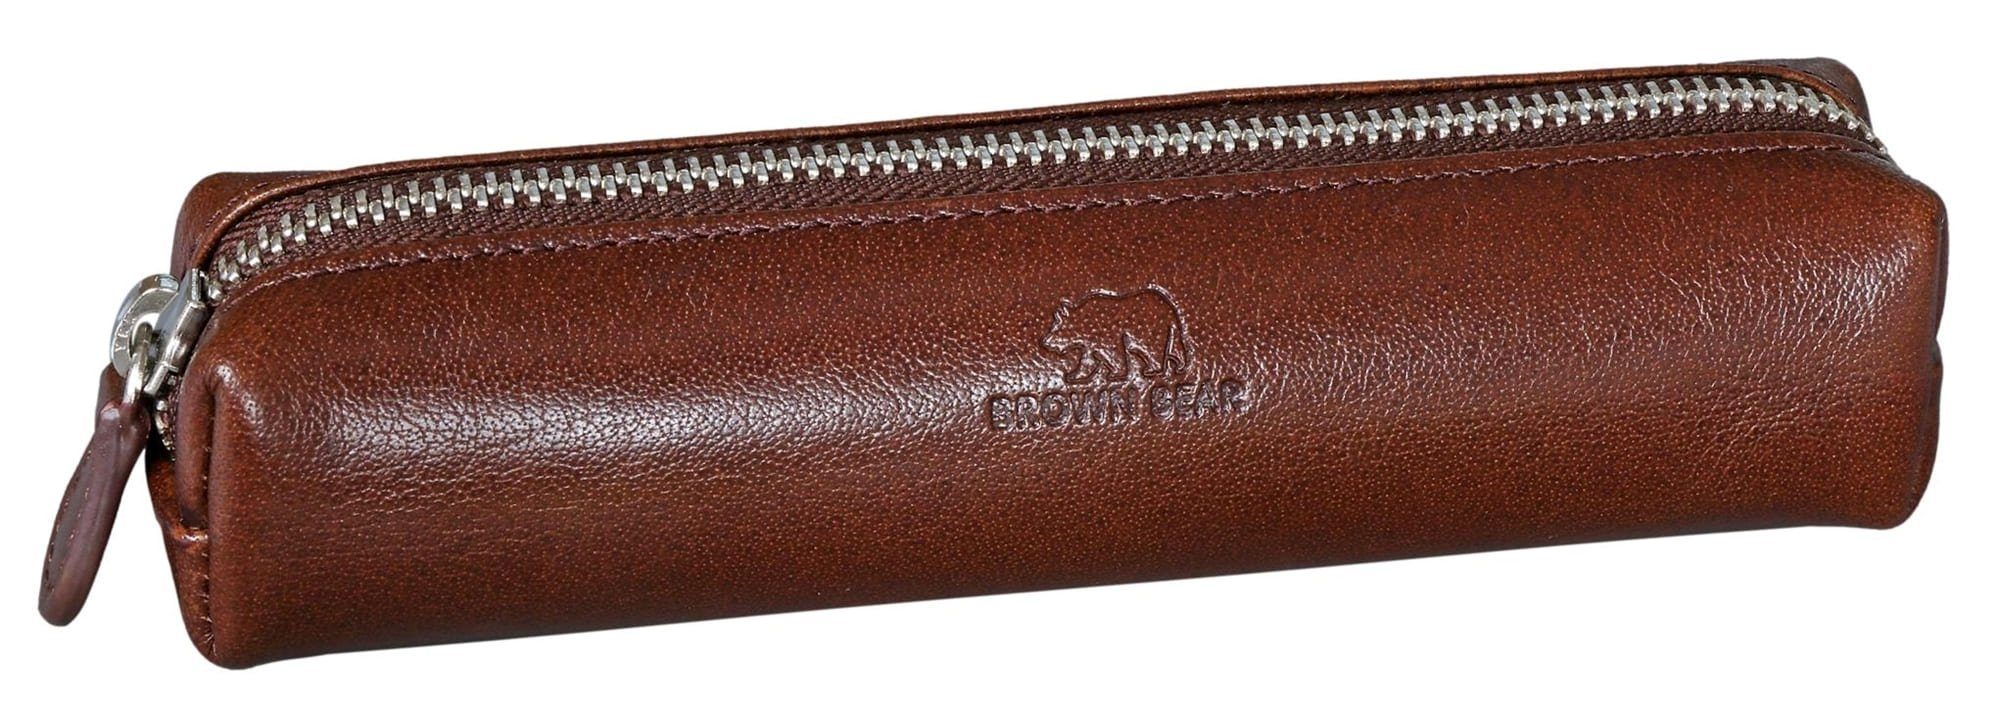 Brown Bear Schreibgeräteetui Modell 1403 - kleines Schreibgeräteetui mit Reißverschluss, für Damen und Herren aus Echtleder Farbe Braun Braun Toscana